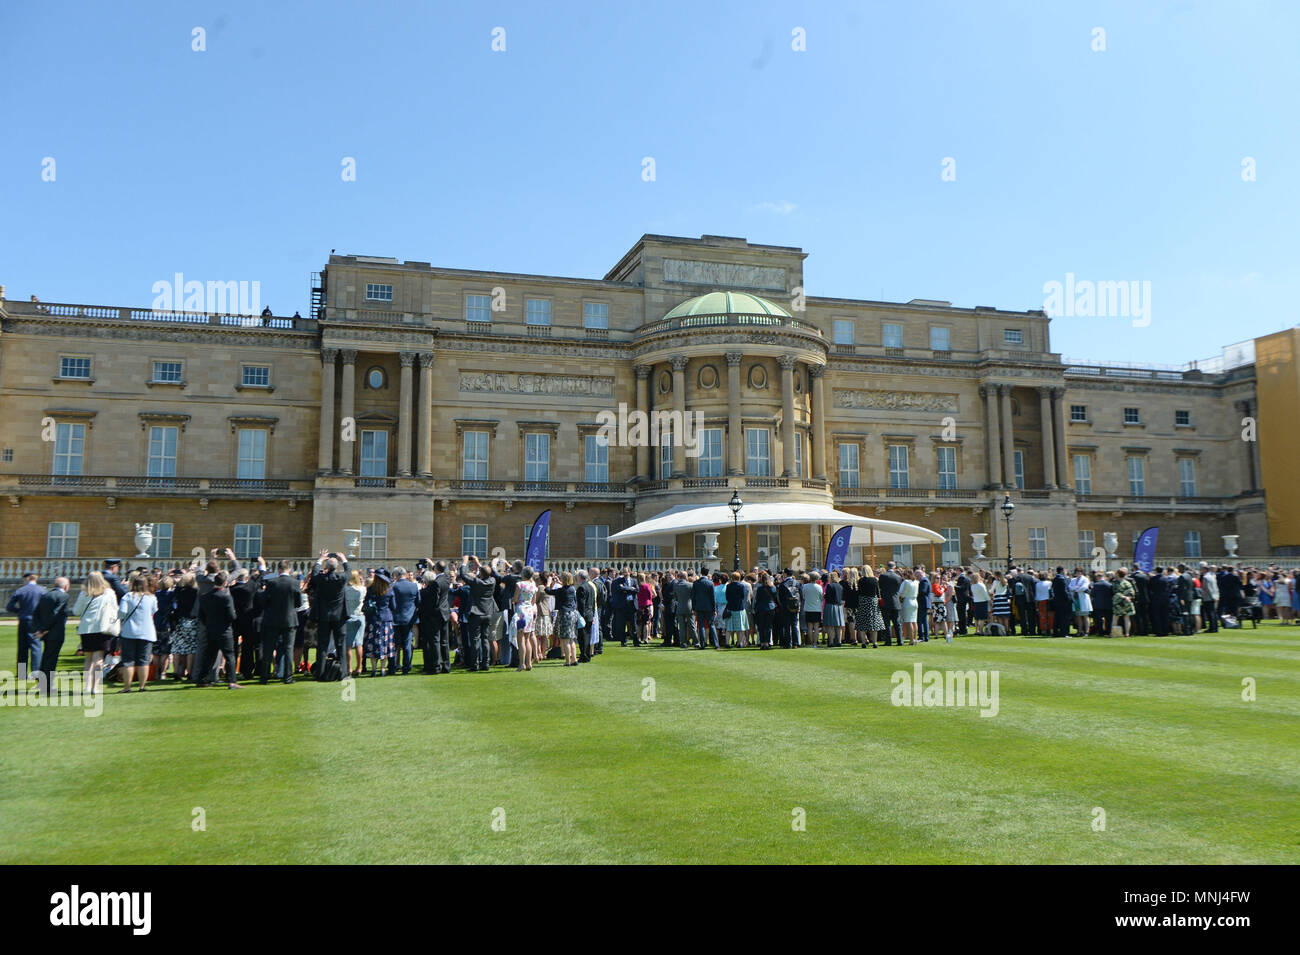 Einen Blick auf den Buckingham Palace in London als Graf und Gräfin von Wessex, dem Herzog von York, Host einen Empfang für junge Menschen, die ihr Gold Awards in den Duke of Edinburgh's Award erreicht haben. Stockfoto